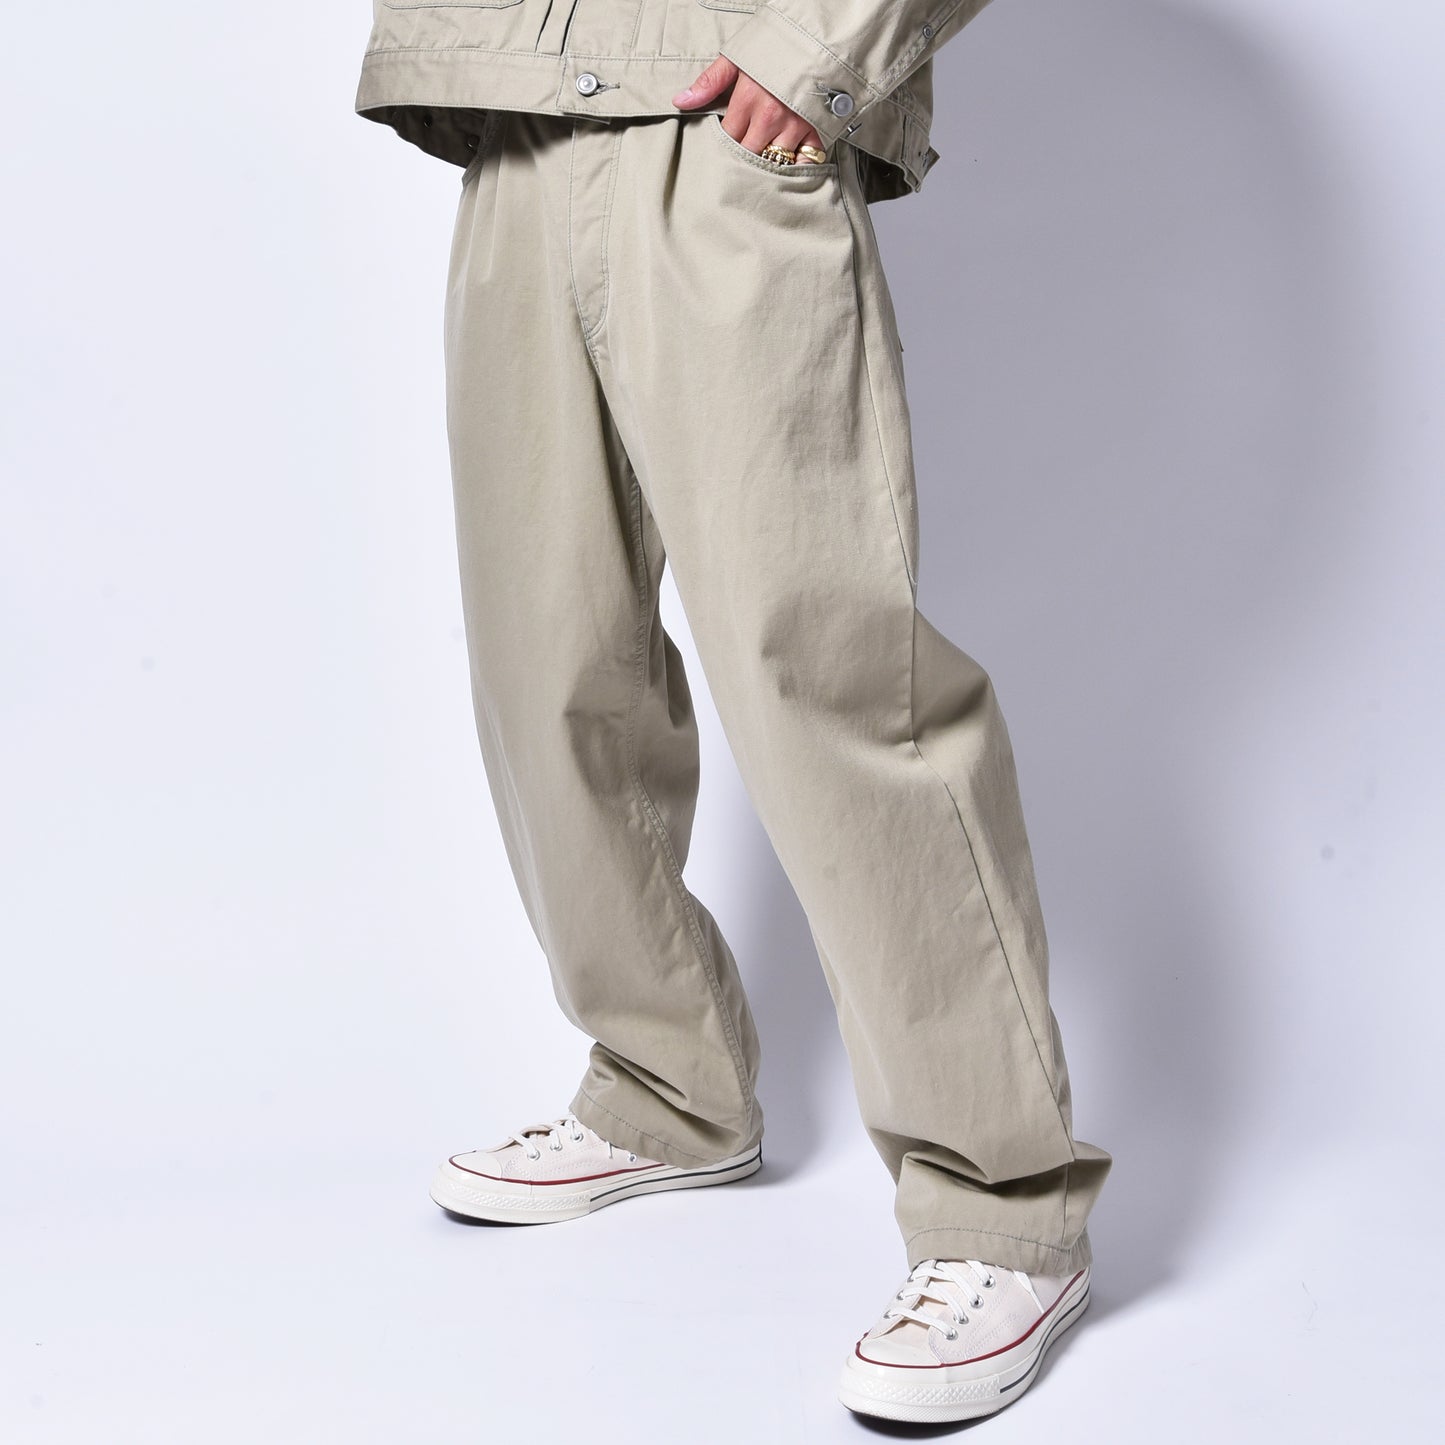 rin / Basic DAD Pants KHAKI